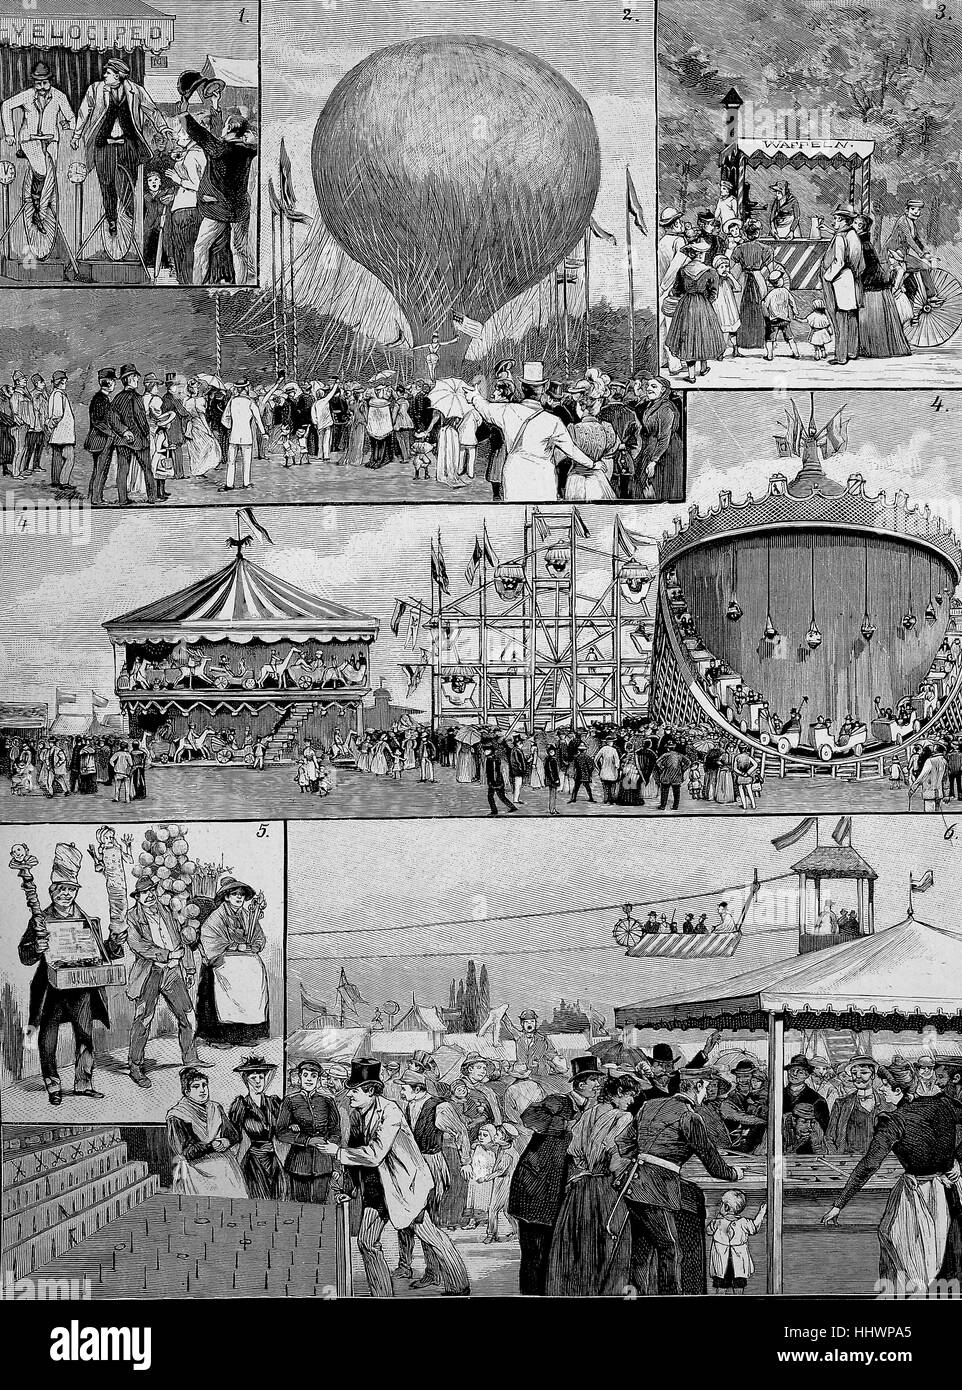 Immagini dal Hasenheide parco divertimenti a Berlino, il disegno originale di G. Lulvas, Germania, immagine storica o illustrazione, pubblicato 1890, digitale migliorata Foto Stock